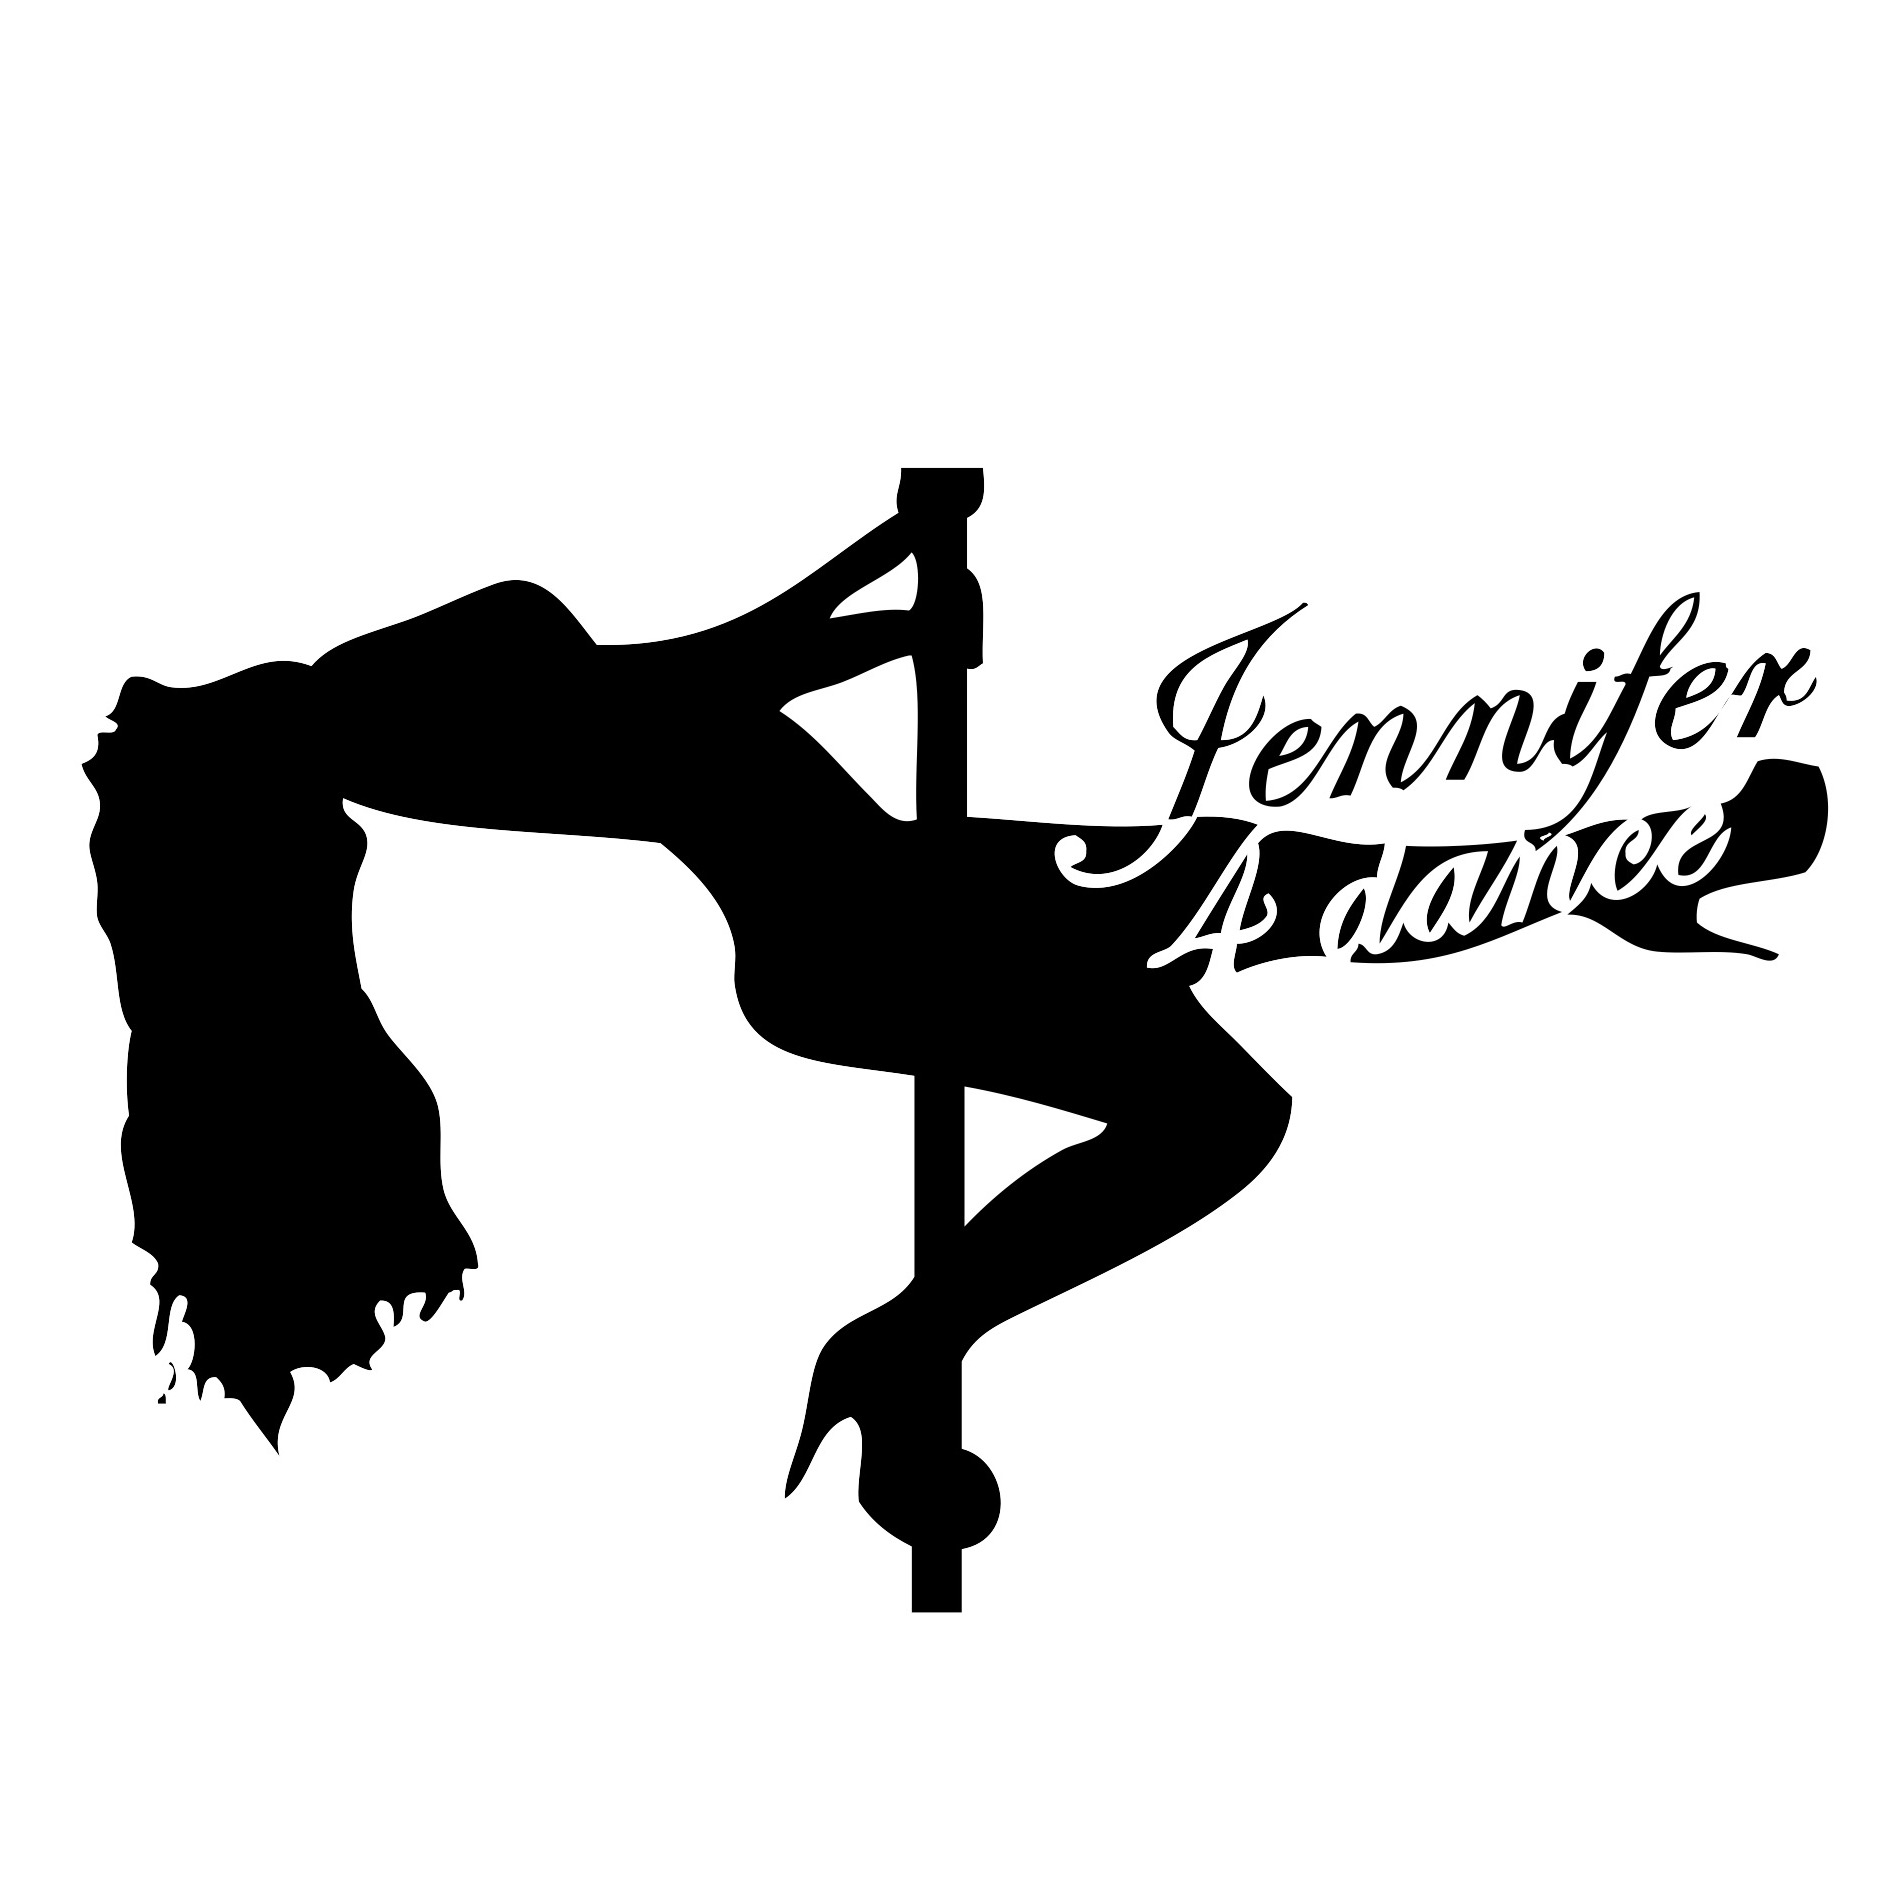 (c) Jennifer4dance.nl